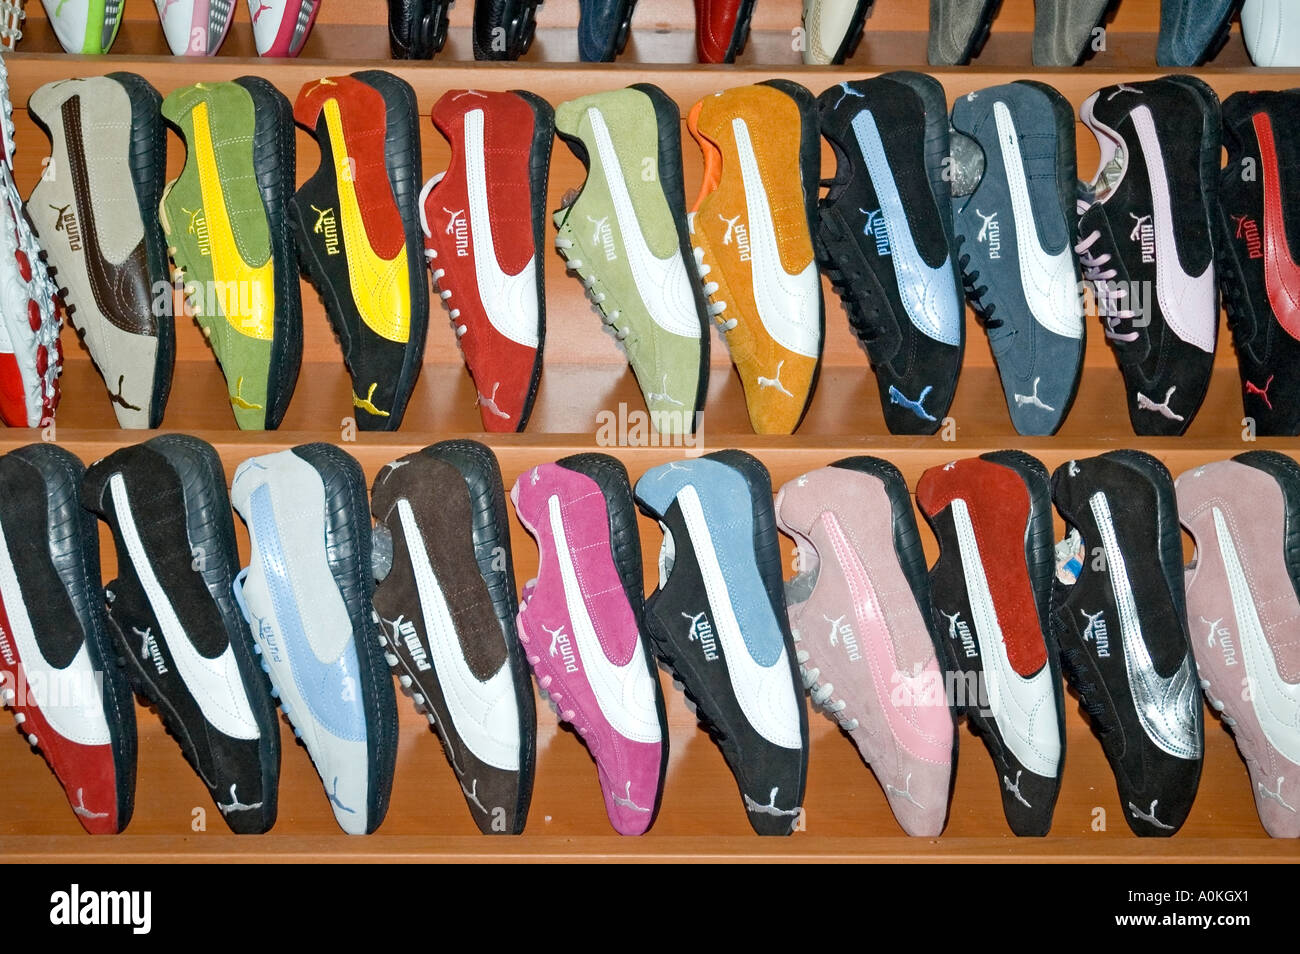 Puma badged scarpe da running, formatori, sneakers, forse falso, per la vendita nel Grand Bazaar, Istanbul, Turchia. DSC 7055 Foto Stock